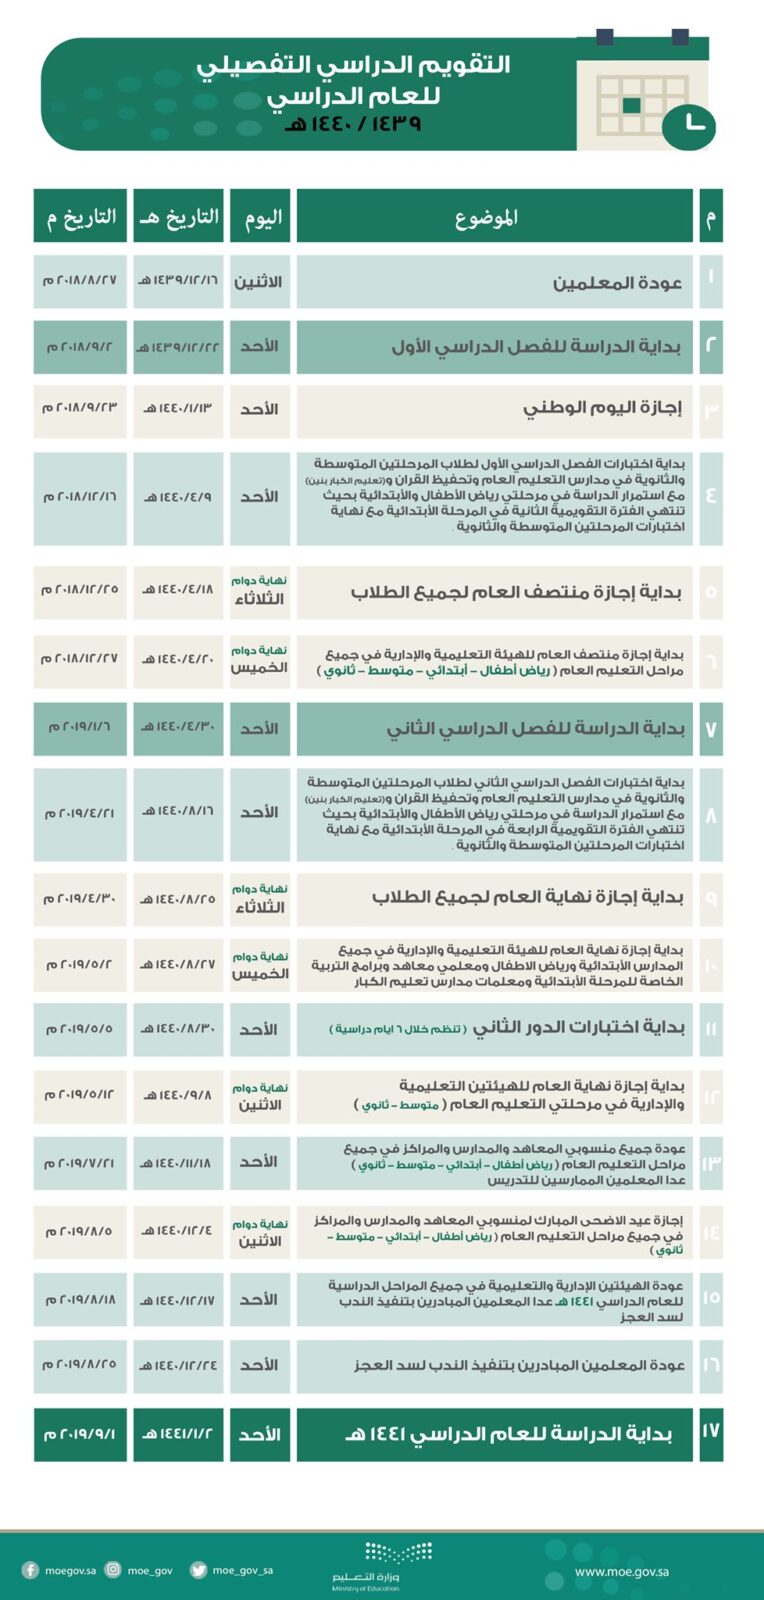 بداية الفصل الدراسي الثاني 1440 التقويم الدراسي 1439 1440 وزارة التعليم السعودية